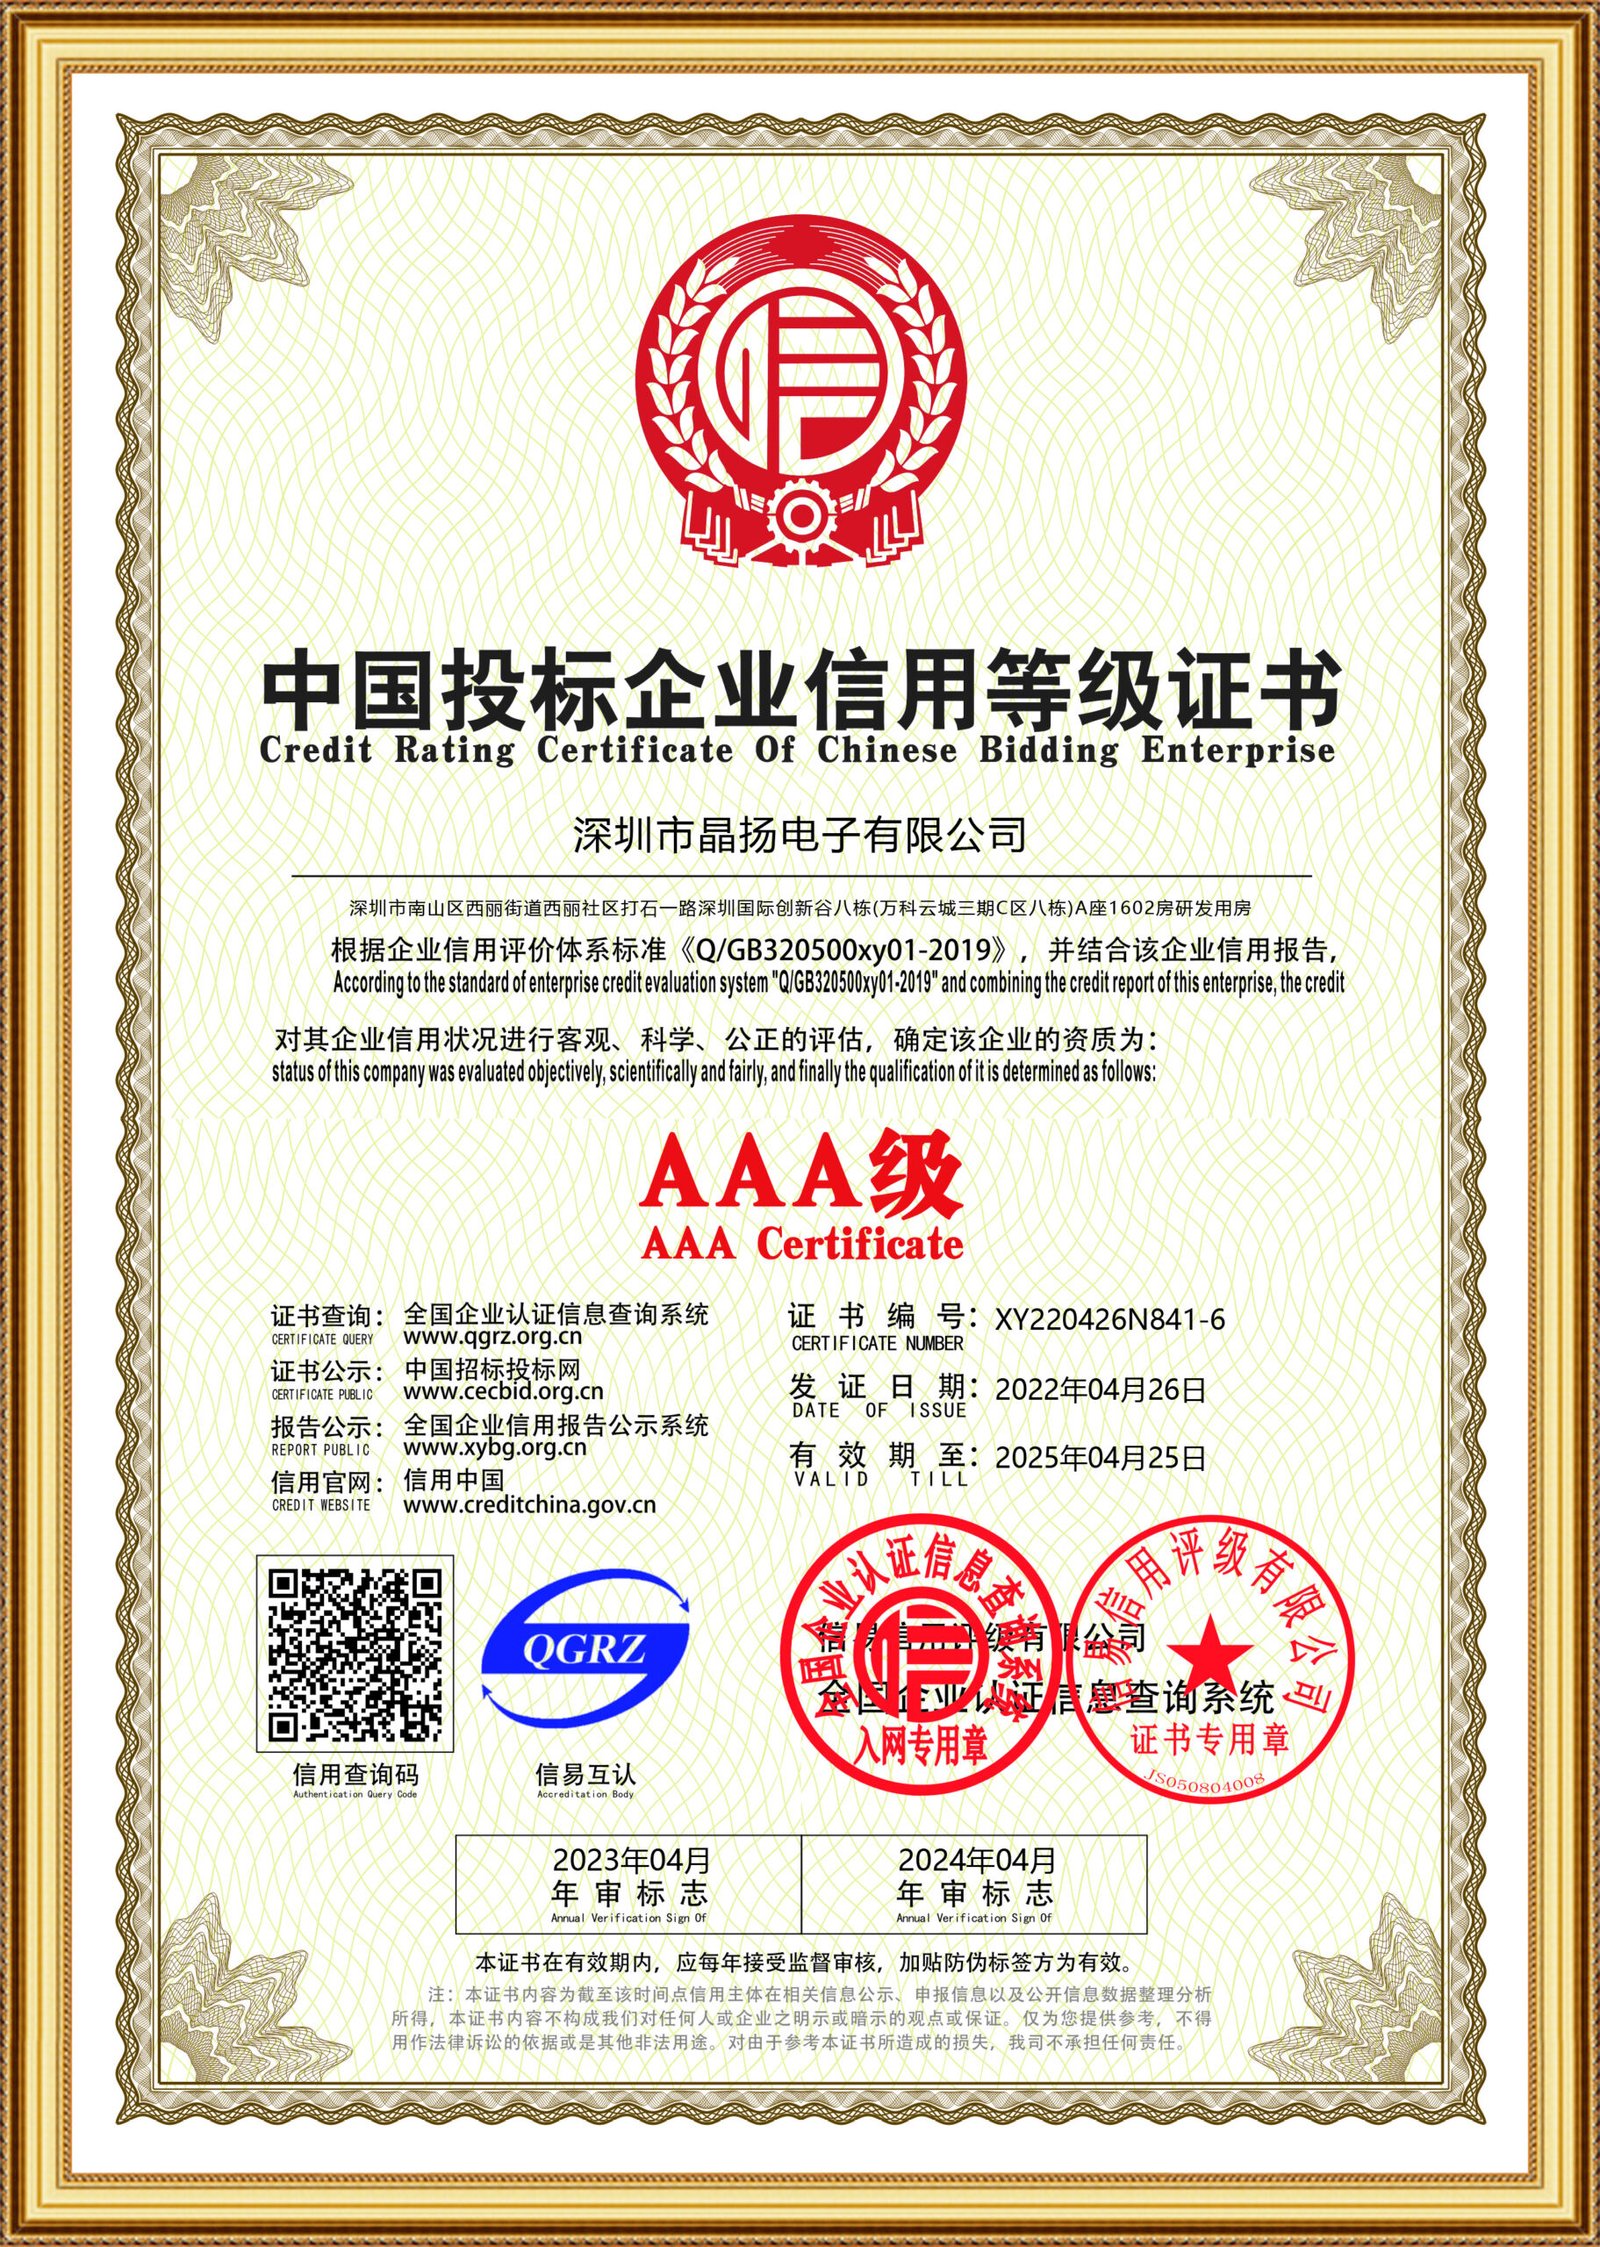 证书 中国投标企业信用等级证书